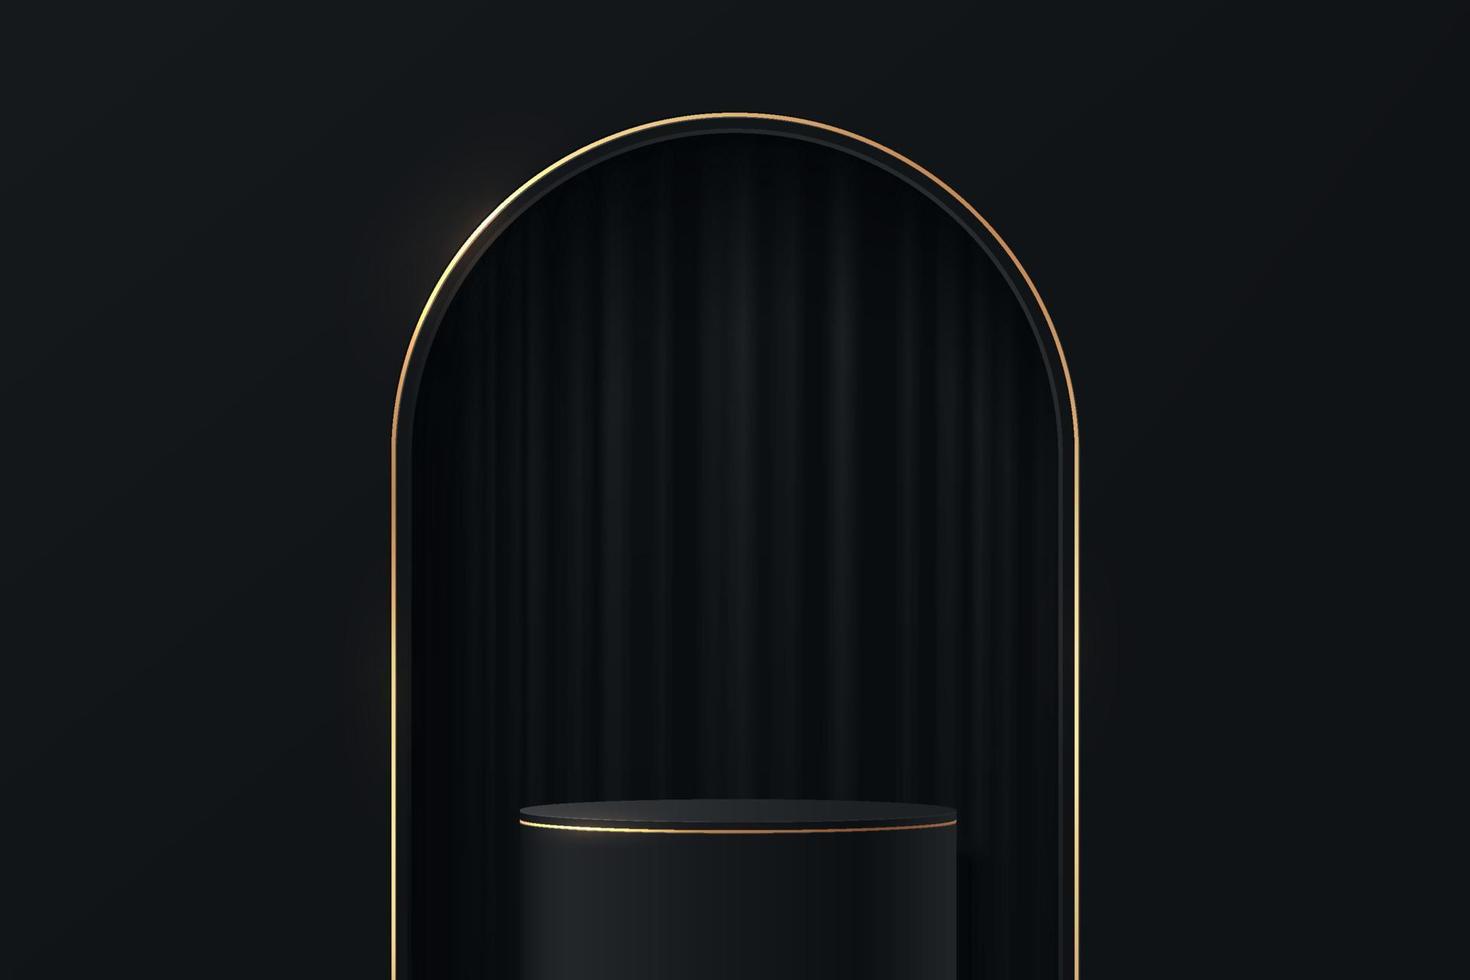 podium de piédestal de cylindre réaliste noir et or avec rideau dans la fenêtre en forme d'arc. salle de studio abstraite de vecteur avec plate-forme géométrique 3d. scène minimale de luxe pour la vitrine des produits, l'affichage de la promotion.